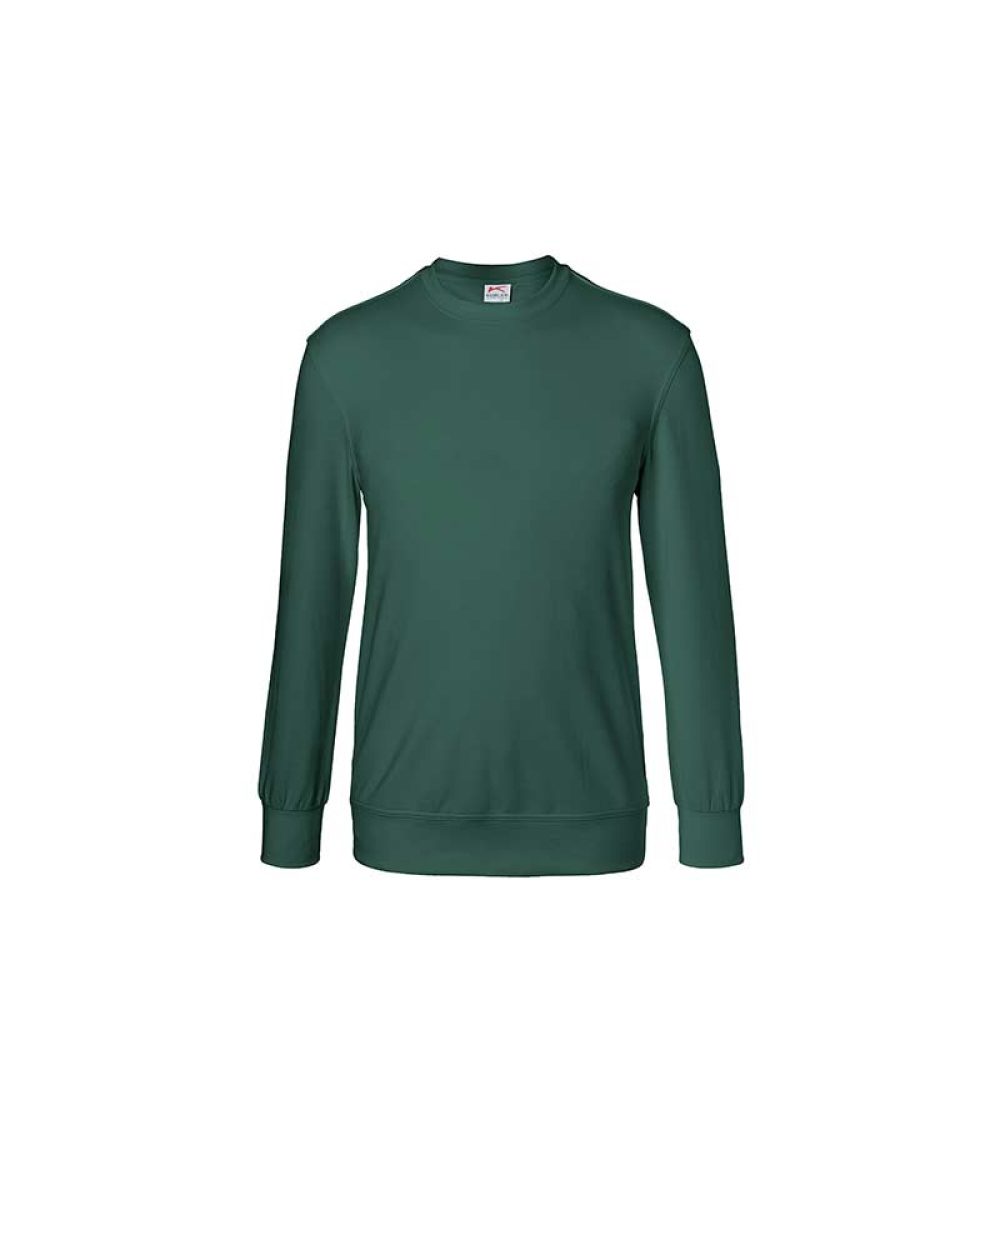 kuebler-sweatshirt-shirts-5023-6330-65